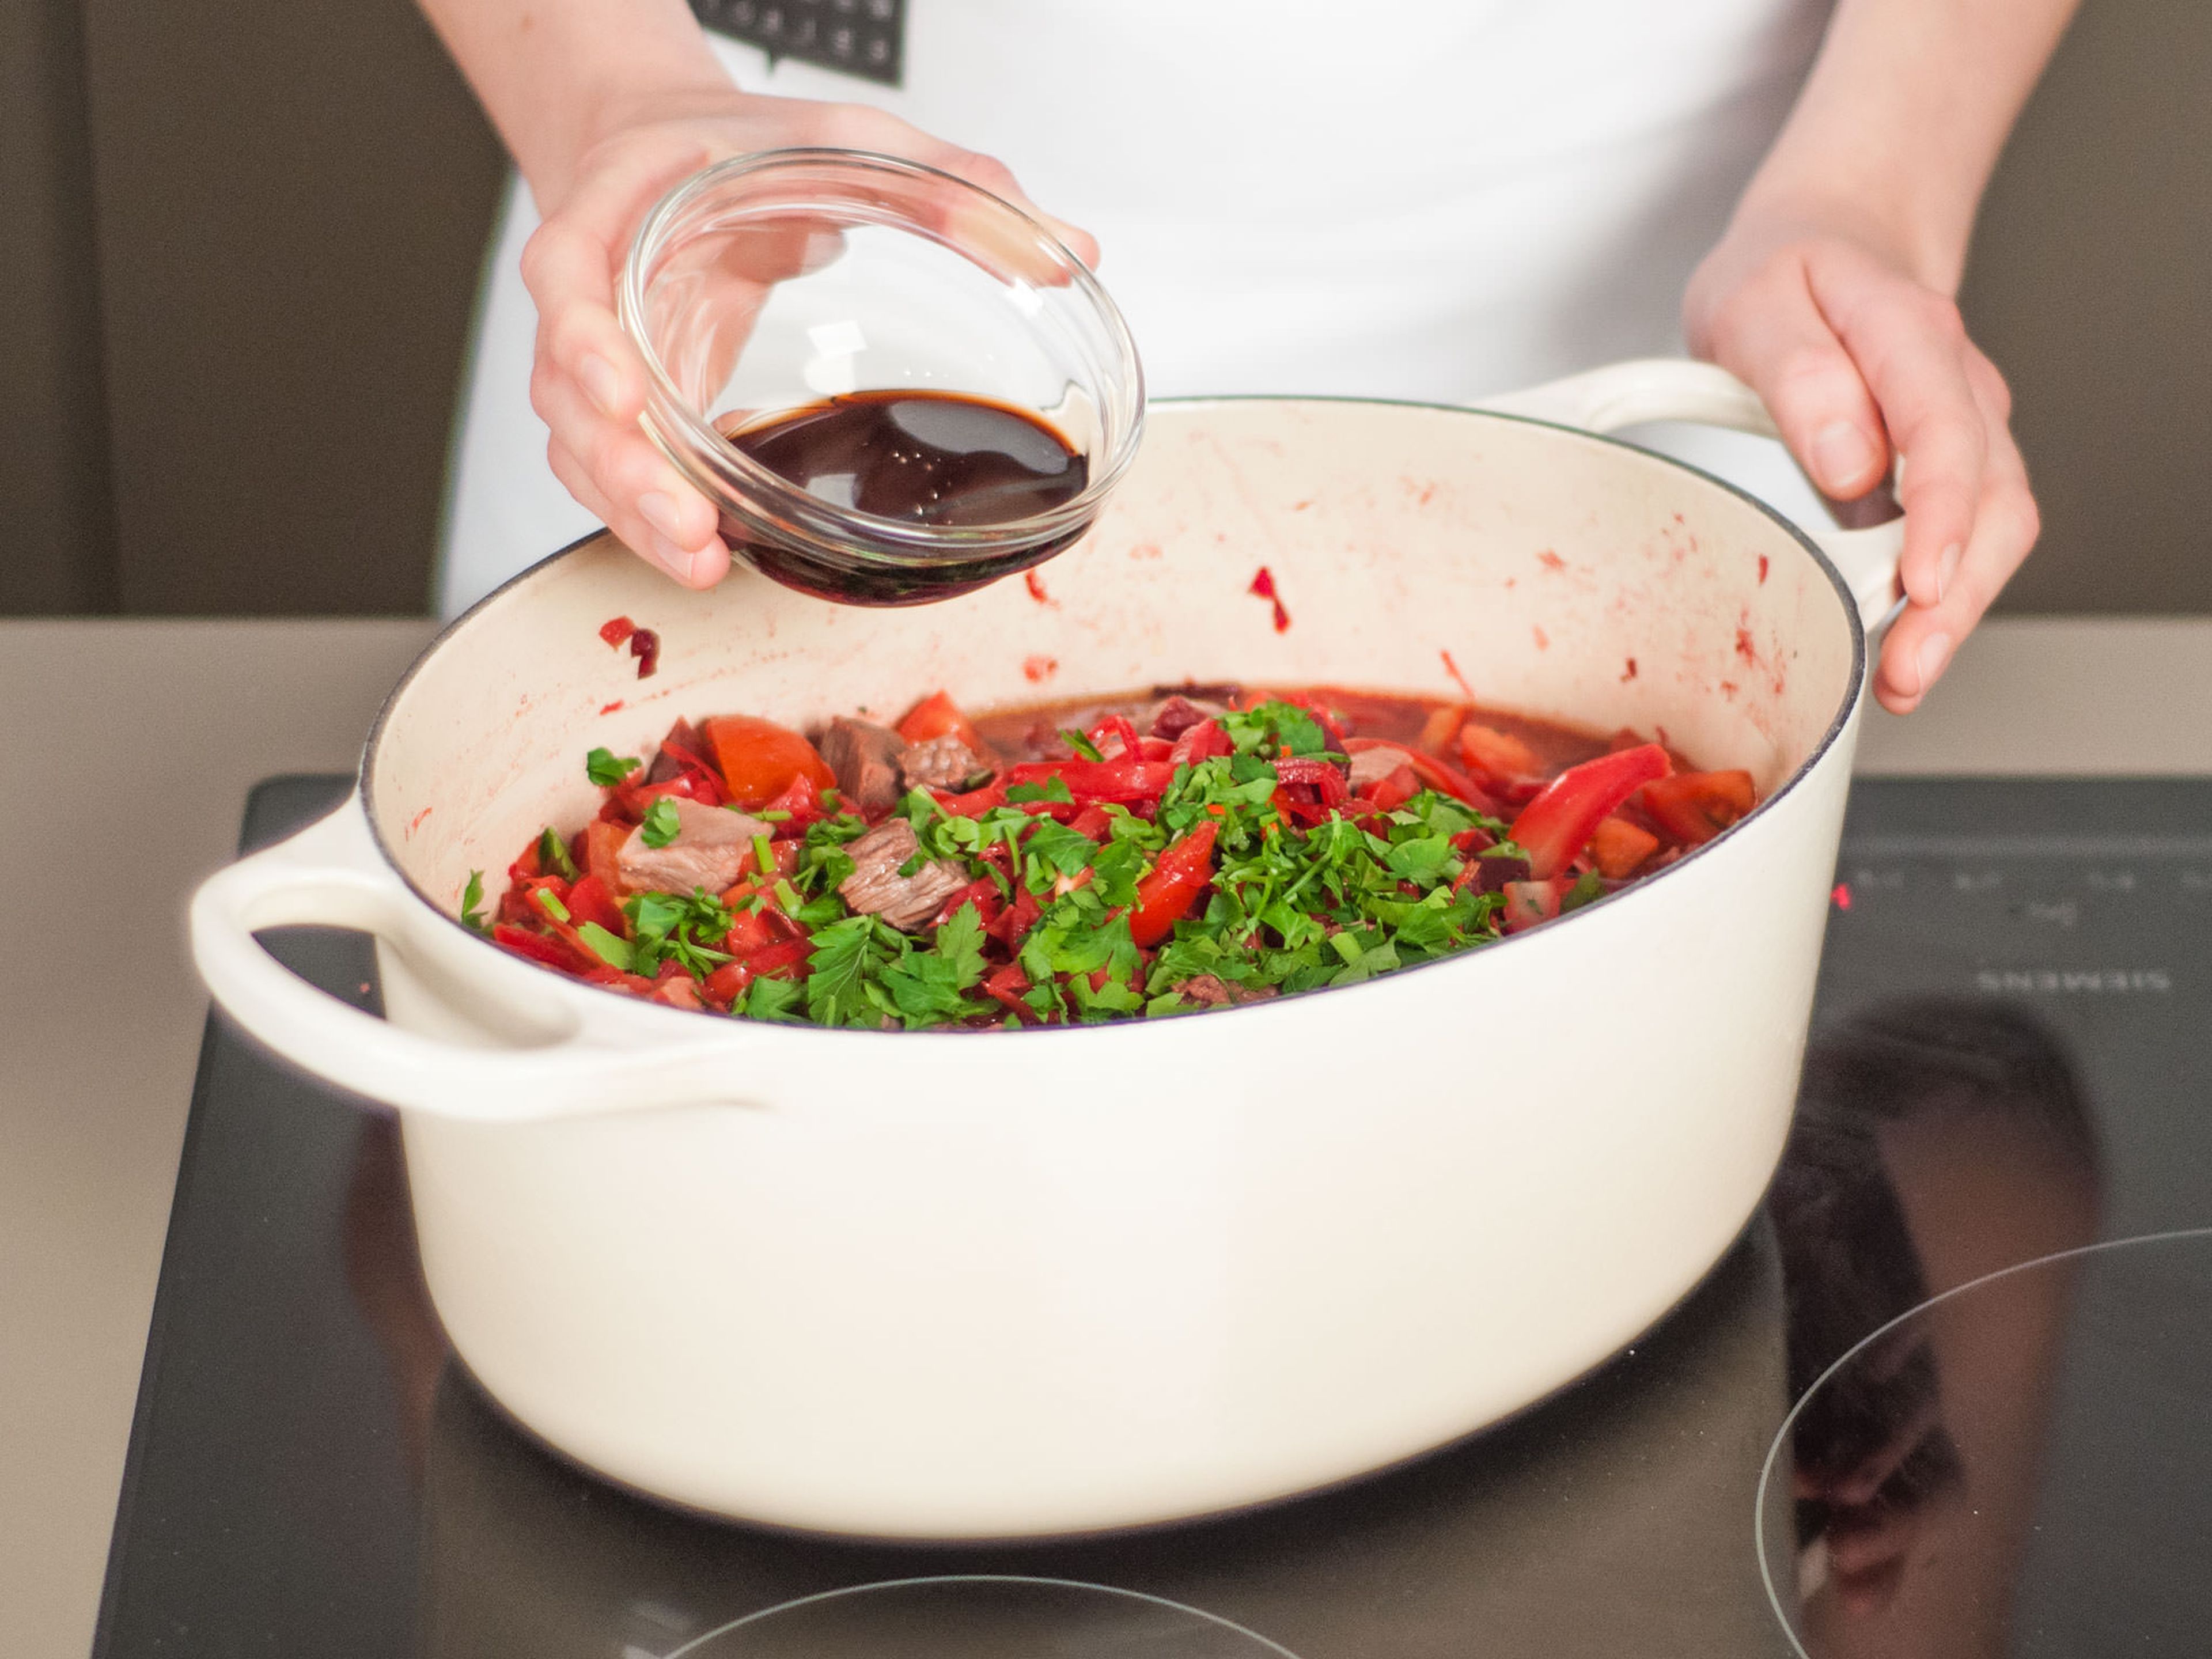 Petersilie und Rotweinessig hinzufügen und gut vermengen. Nach Wunsch mit saurer Sahne serviert genießen.